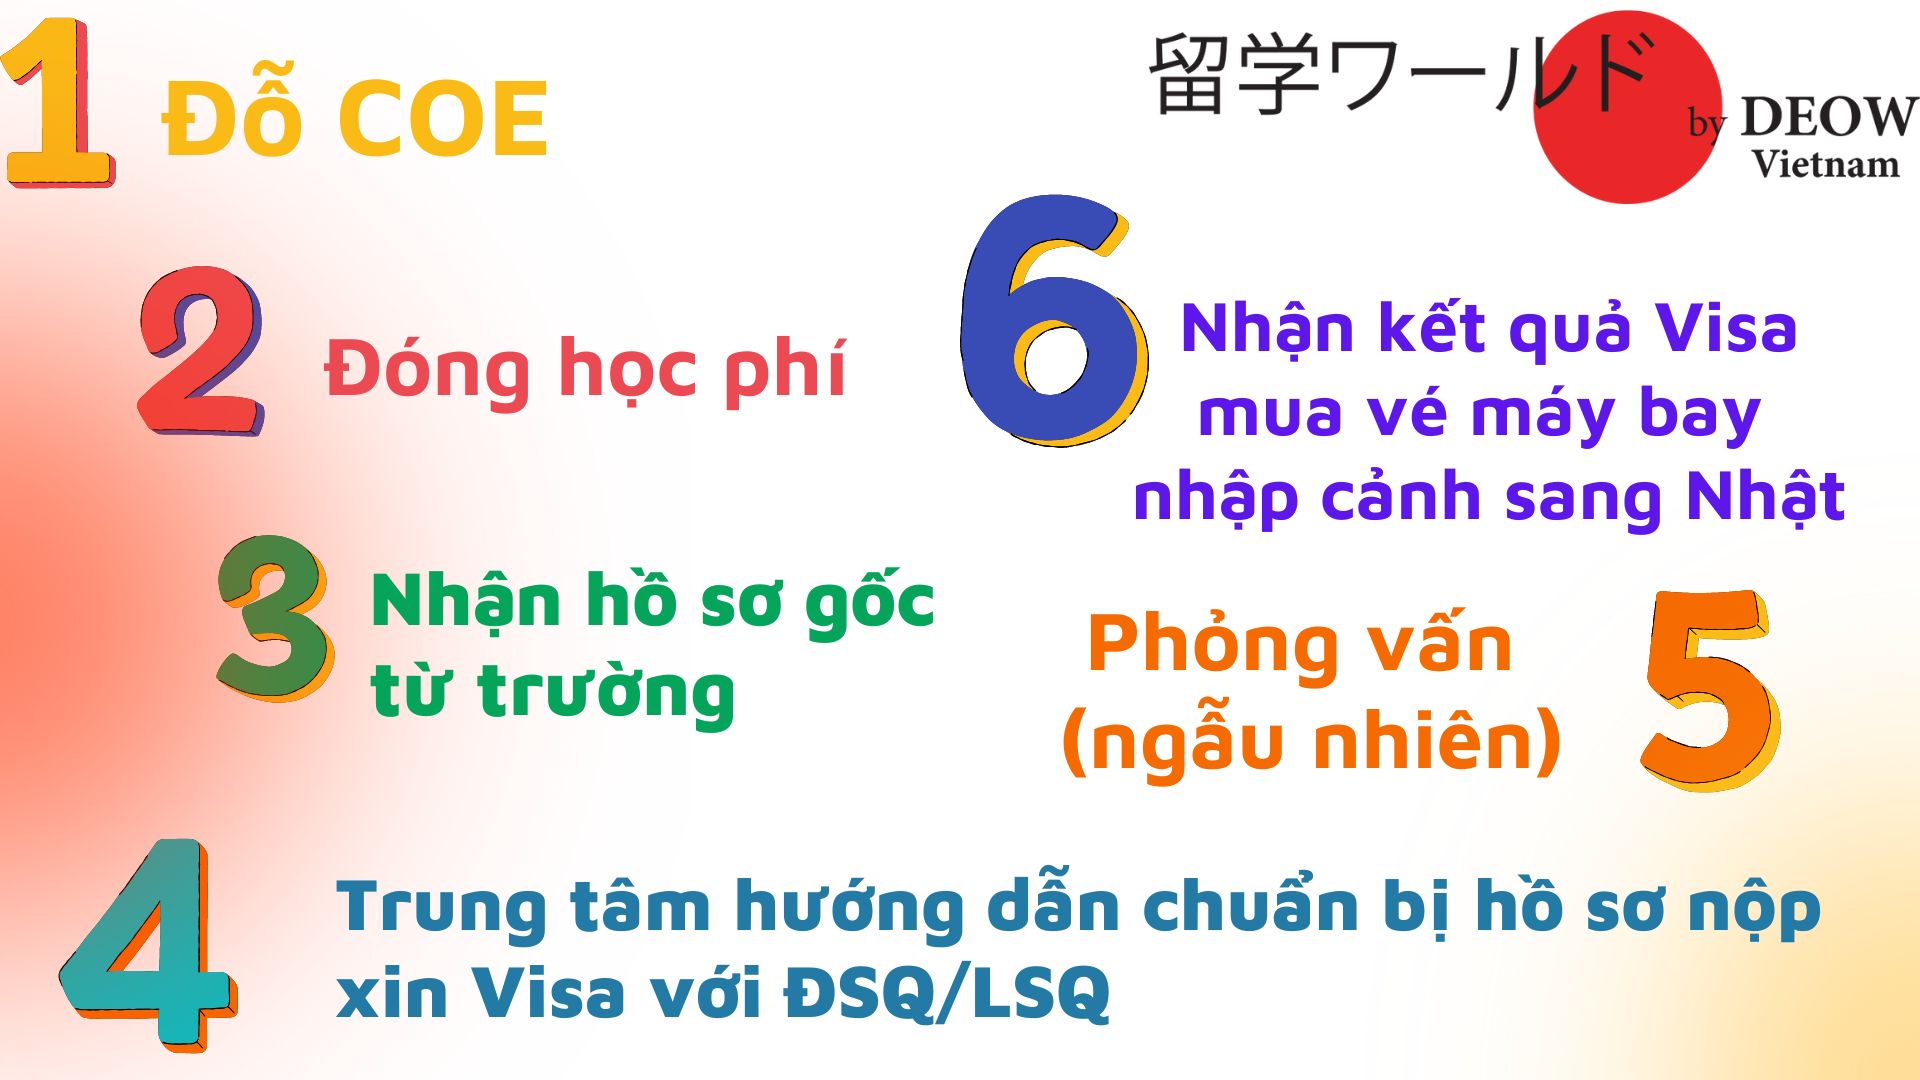 6-buoc-visa-du-hoc-nhat-ban-deow-0813980800 (2)